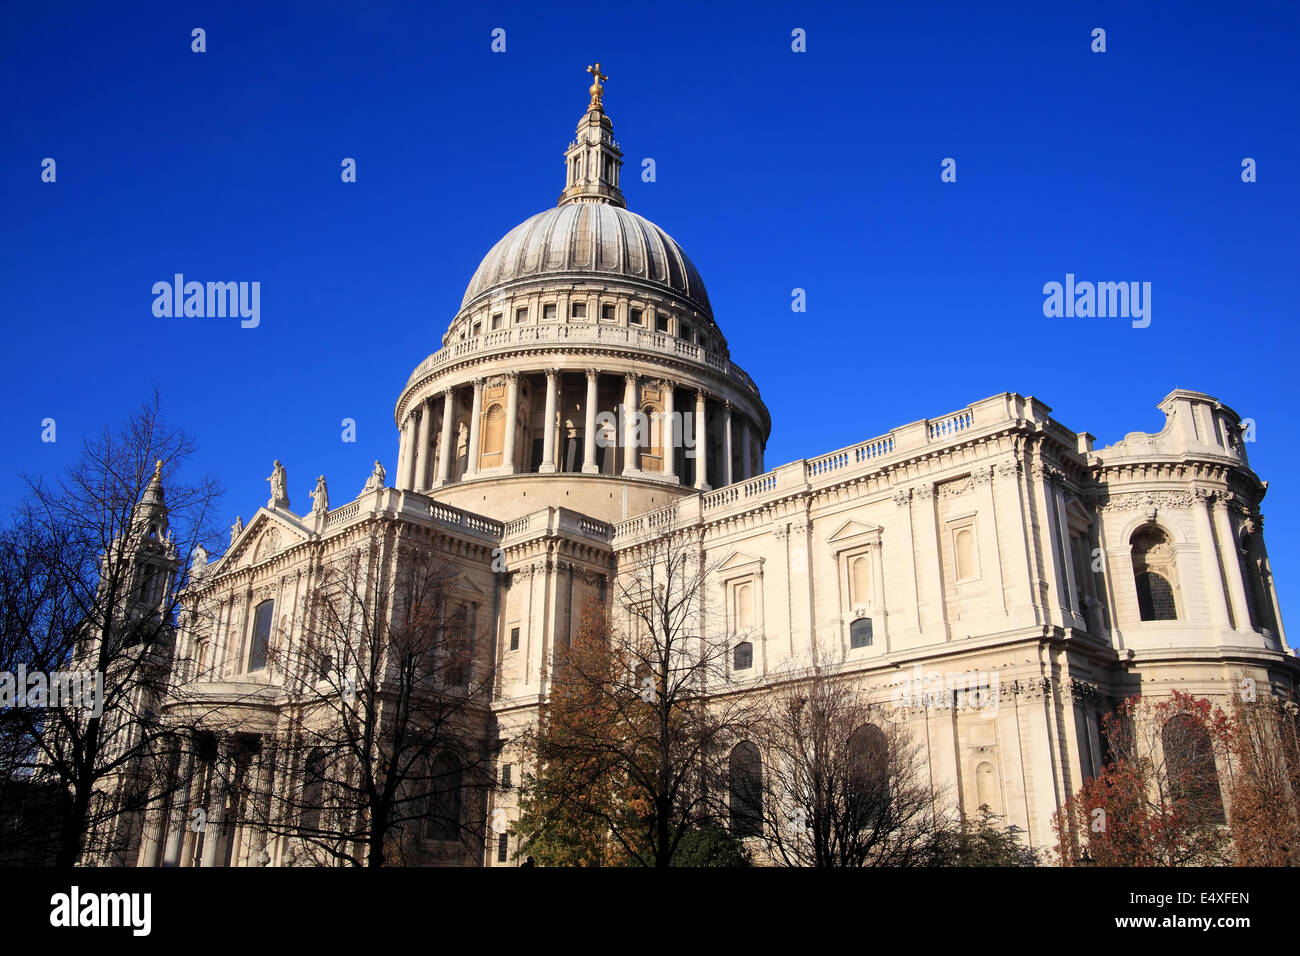 St. Pauls Cathedral in London, UK, gebaut nach dem großen Brand von London 1666, ist Christopher Wrens Meisterwerk Stockfoto